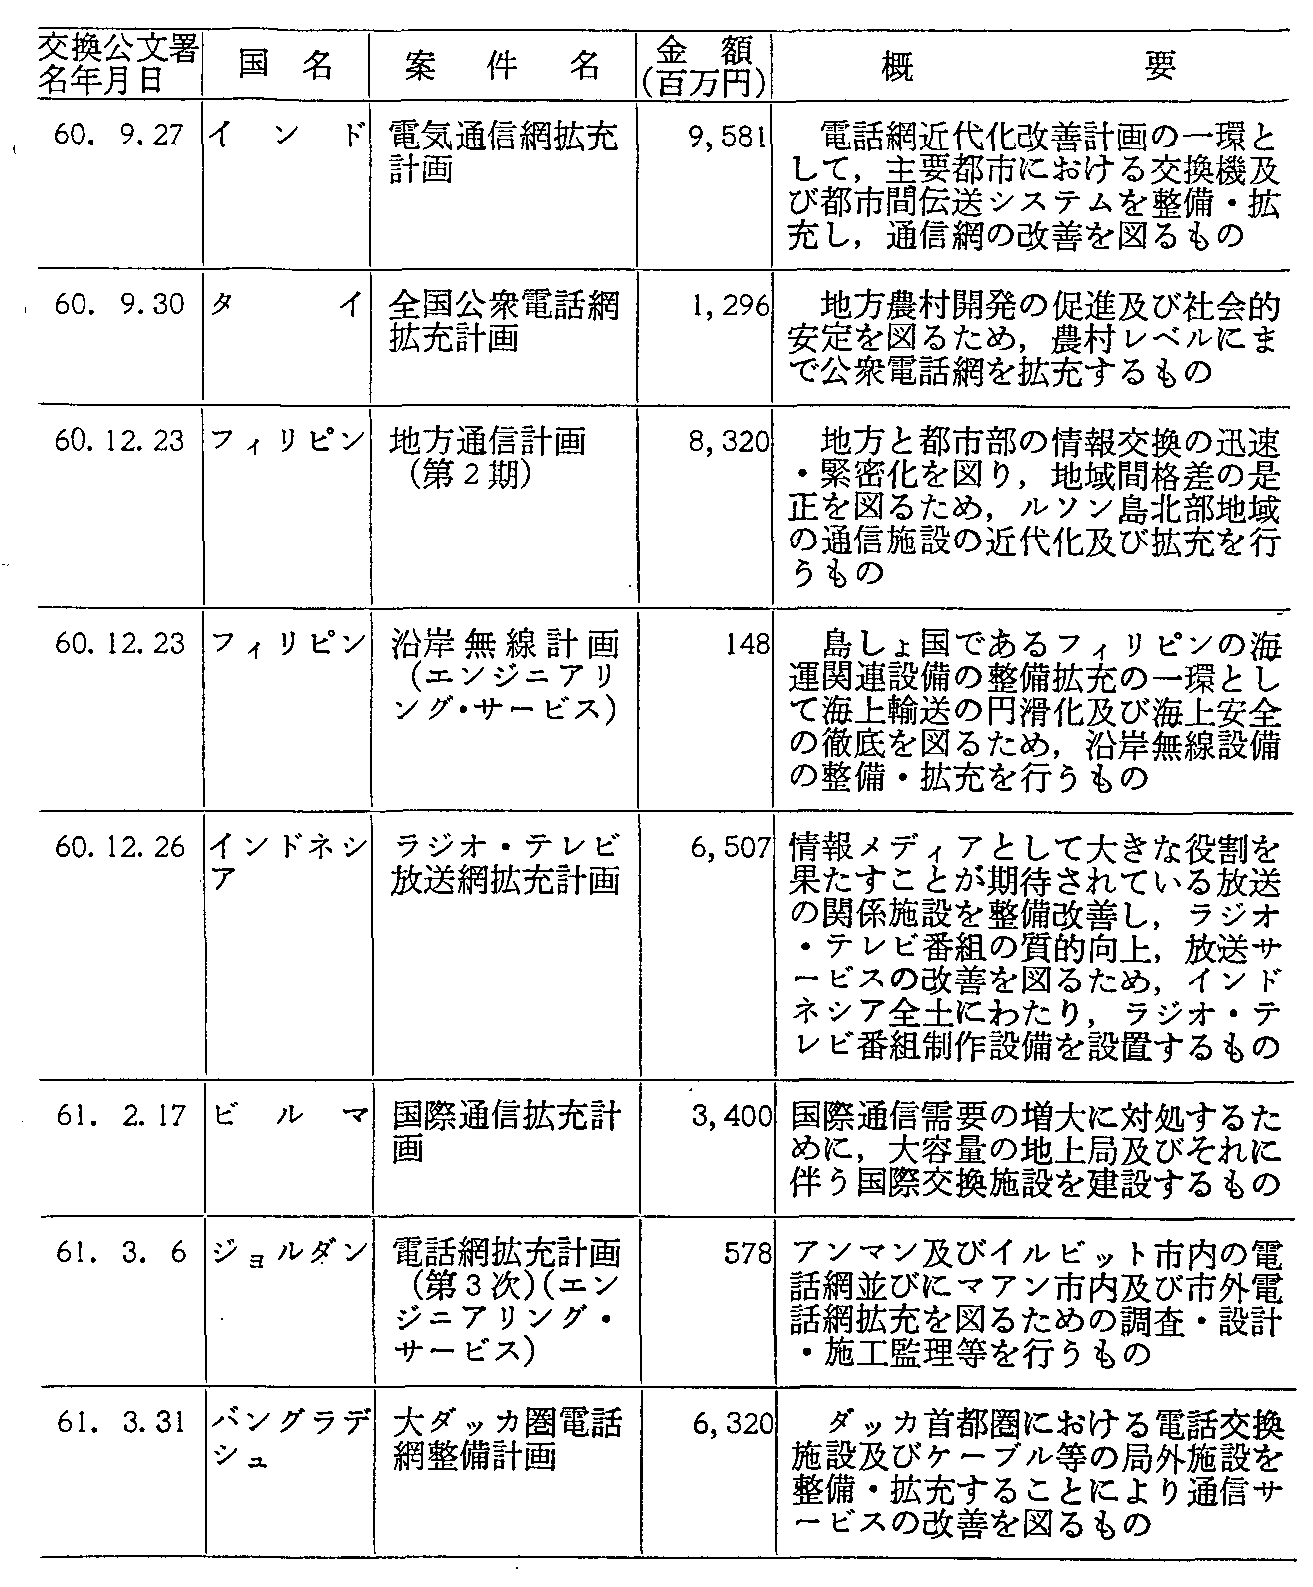 資料7-39 通信分野における円借款の実施状況(60年度)(2)